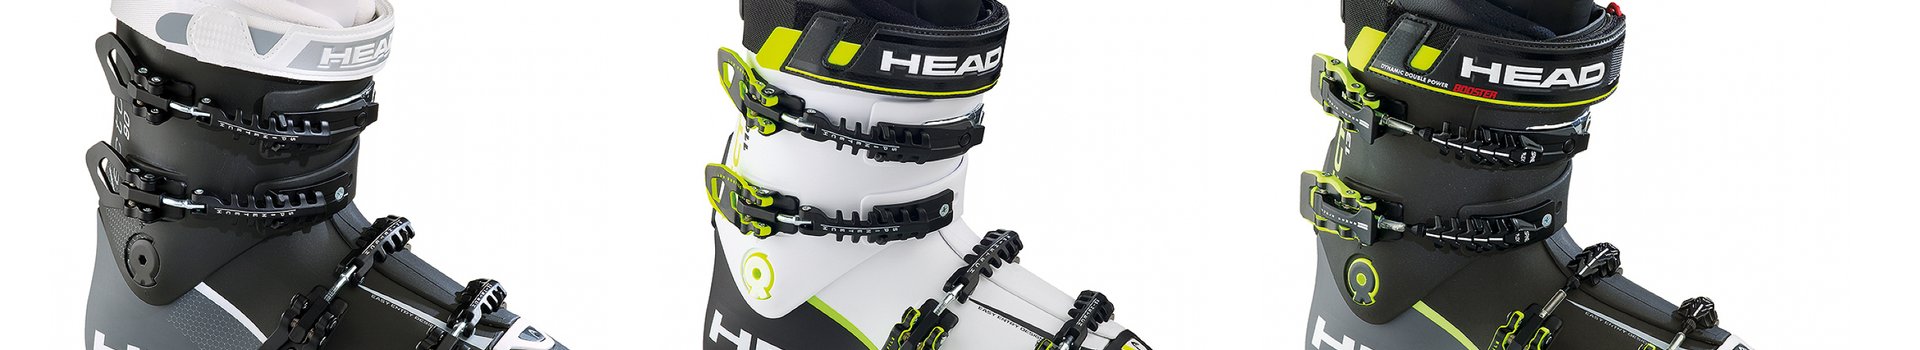 Buty narciarskie Head Vector EVO - stworzone, by osiągać więcej, niż można!